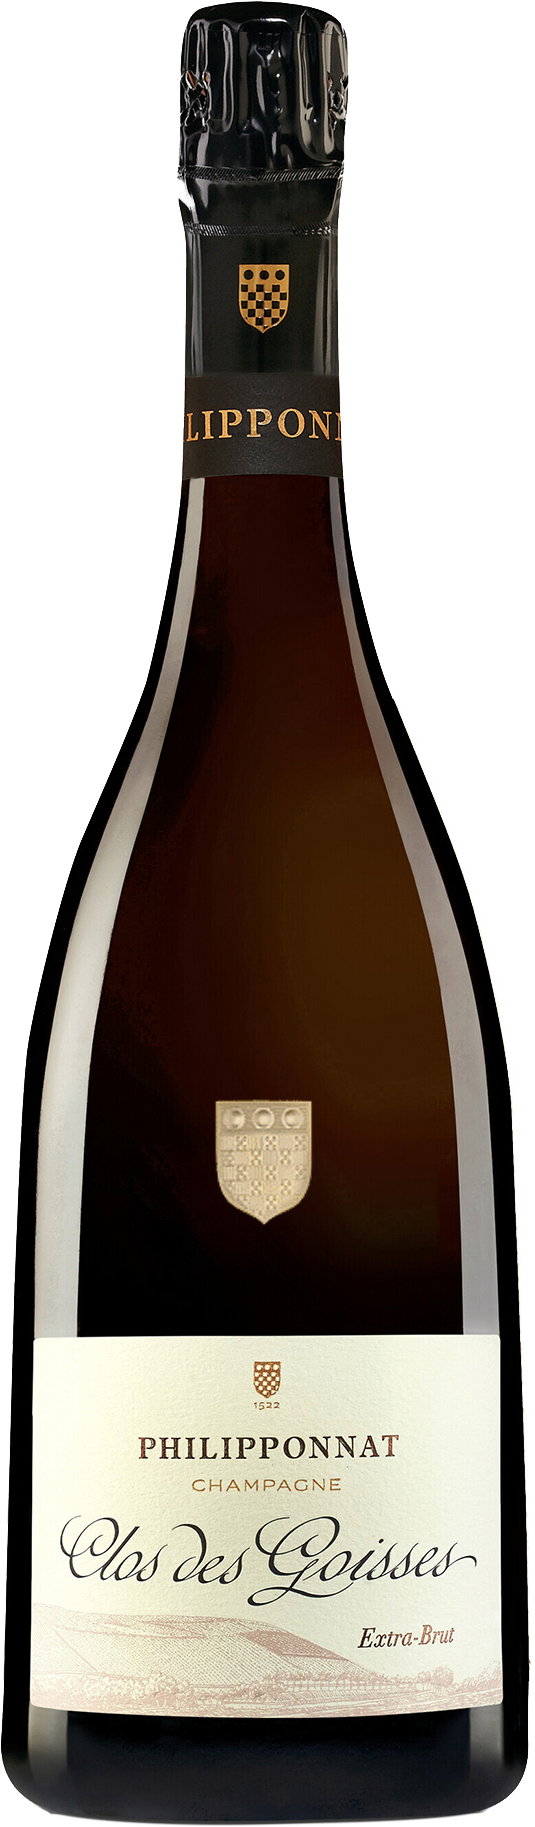 Champagne Philipponnat Clos des Goisses 2012 (Disg. Aug 2021)